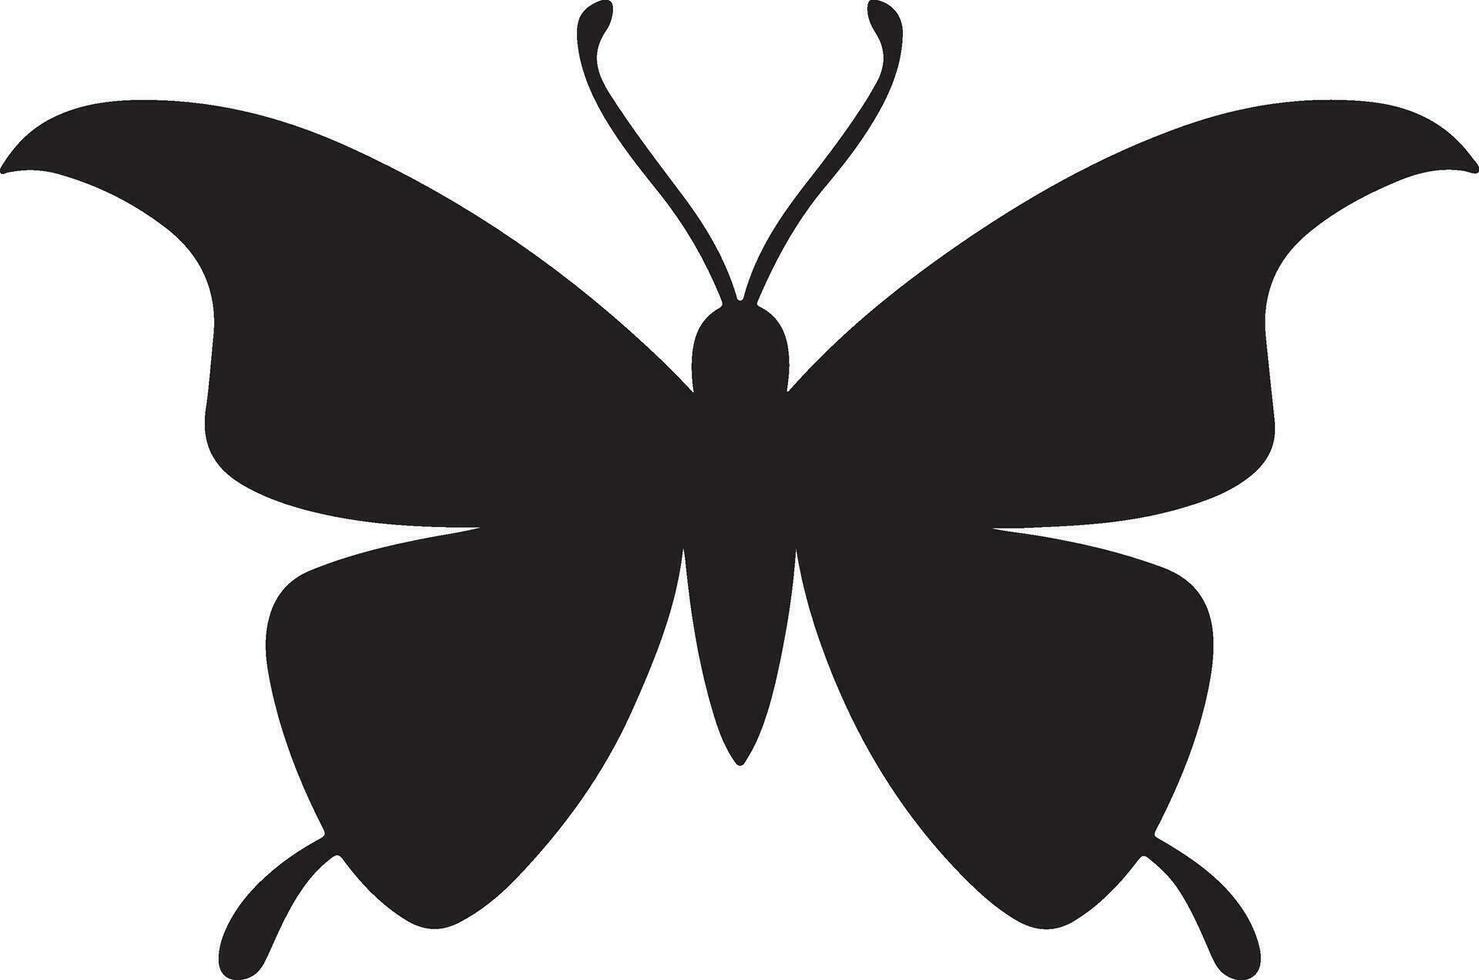 nero farfalla silhouette illustrazione vettore